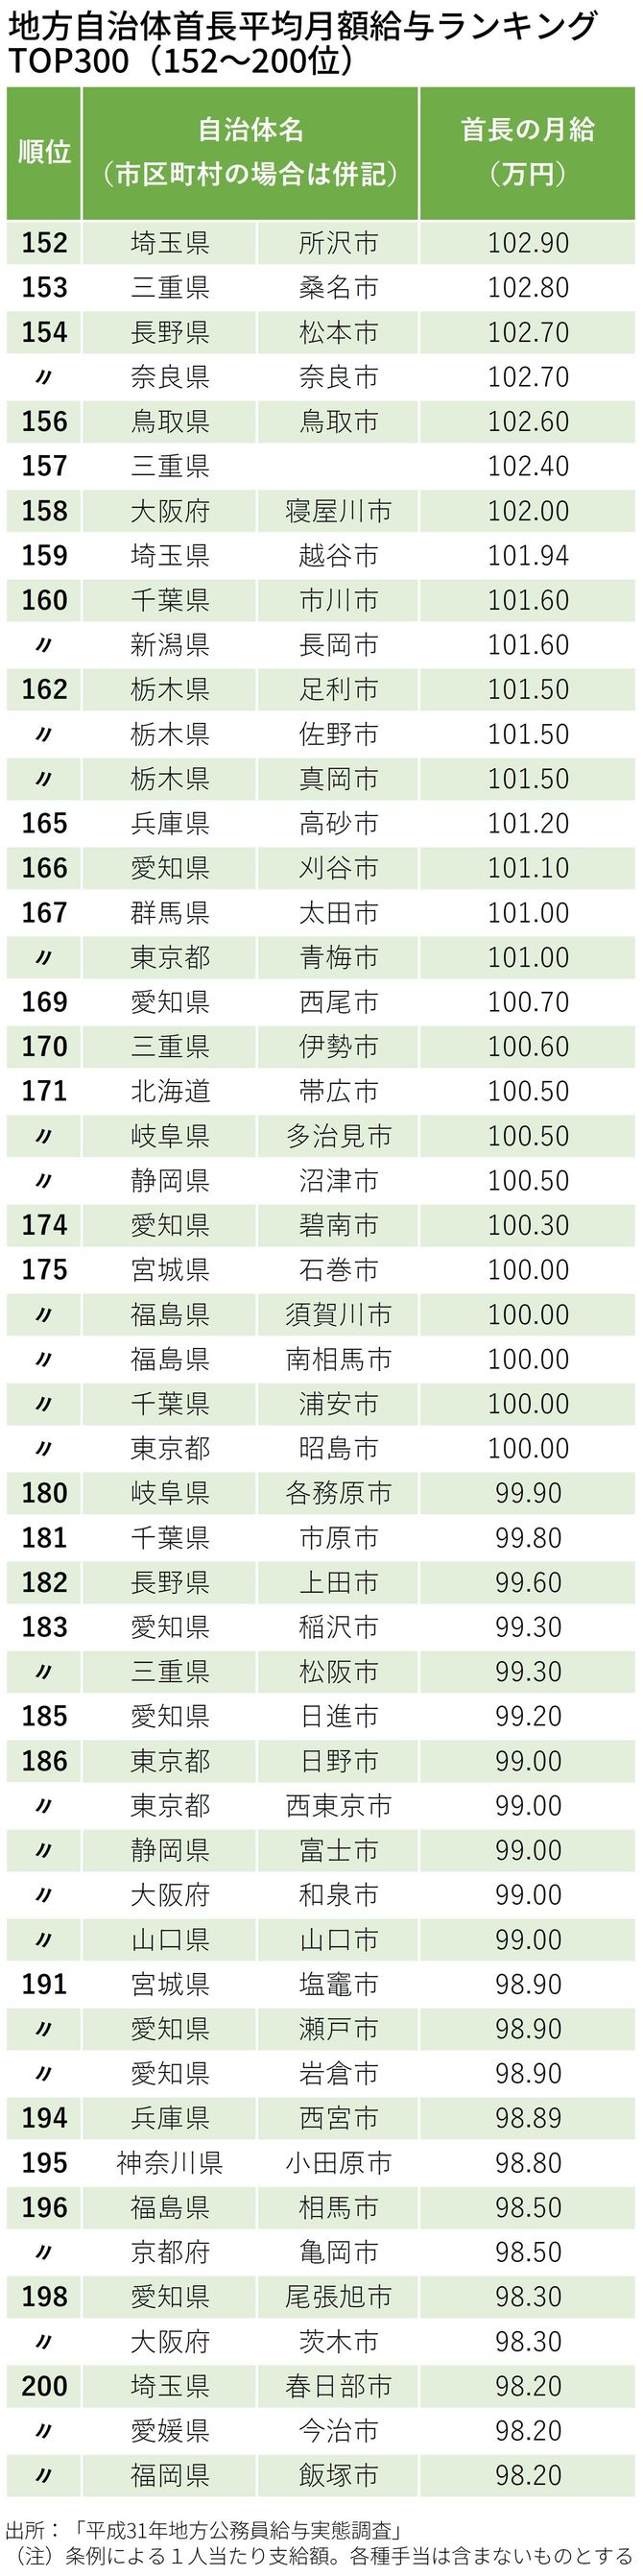 地方自治体首長平均月額給与ランキング TOP300（152～200位）